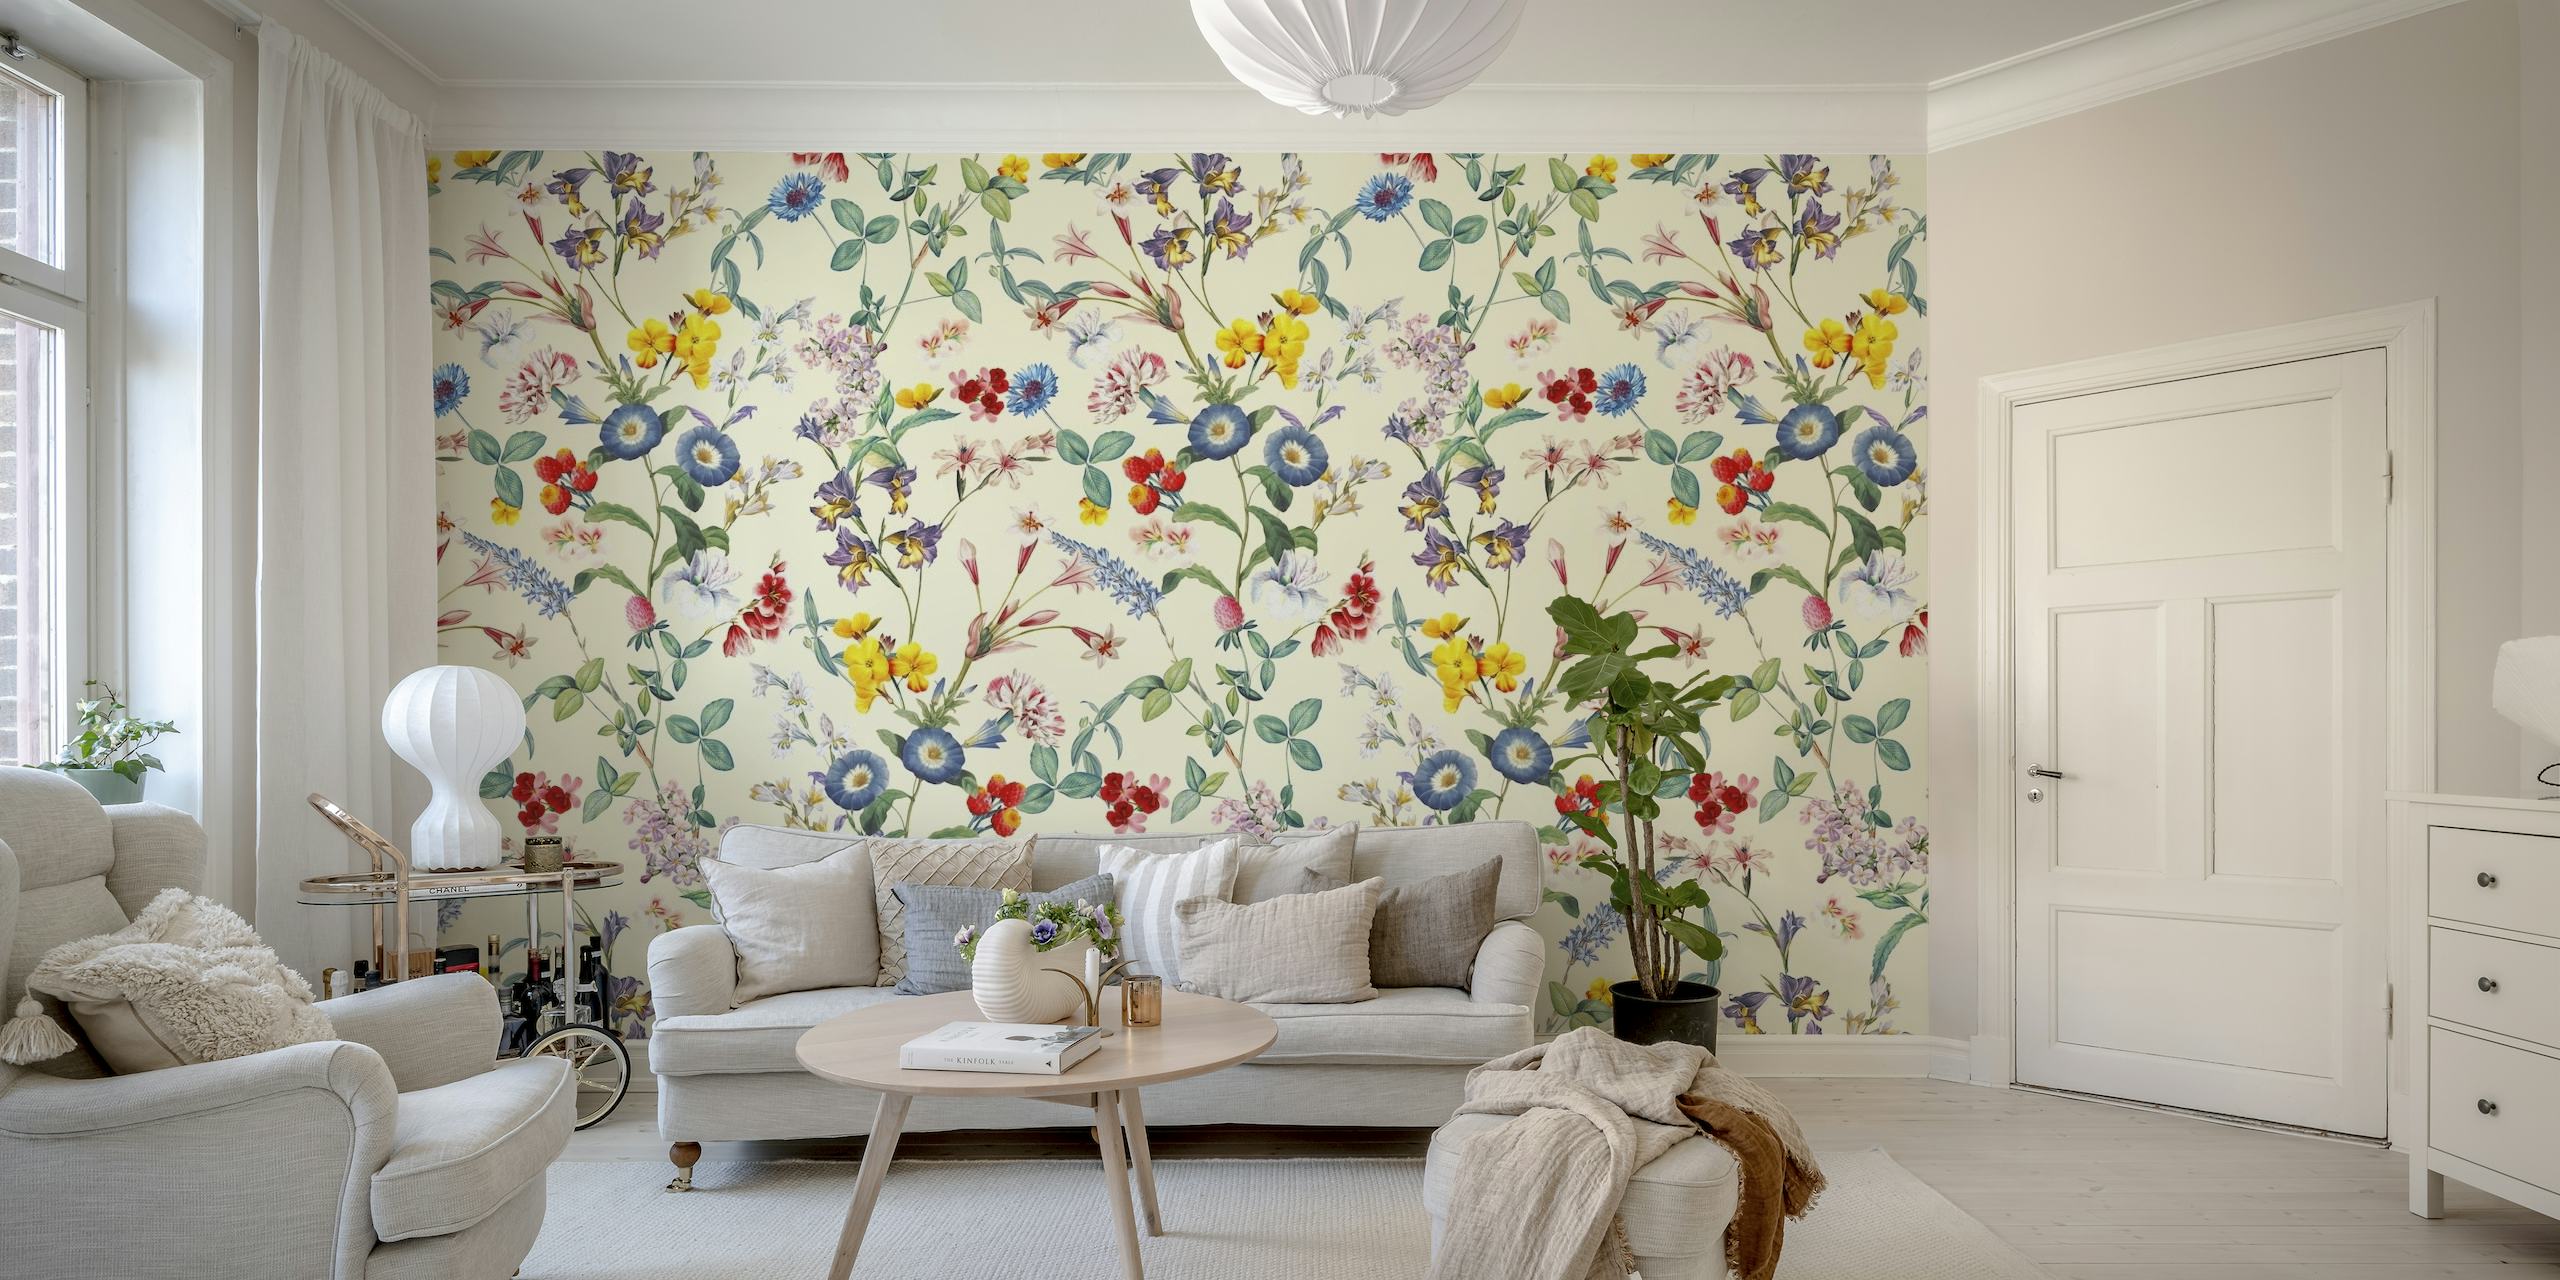 Kleurrijke muurschildering met wilde bloemen en vlinderpatronen